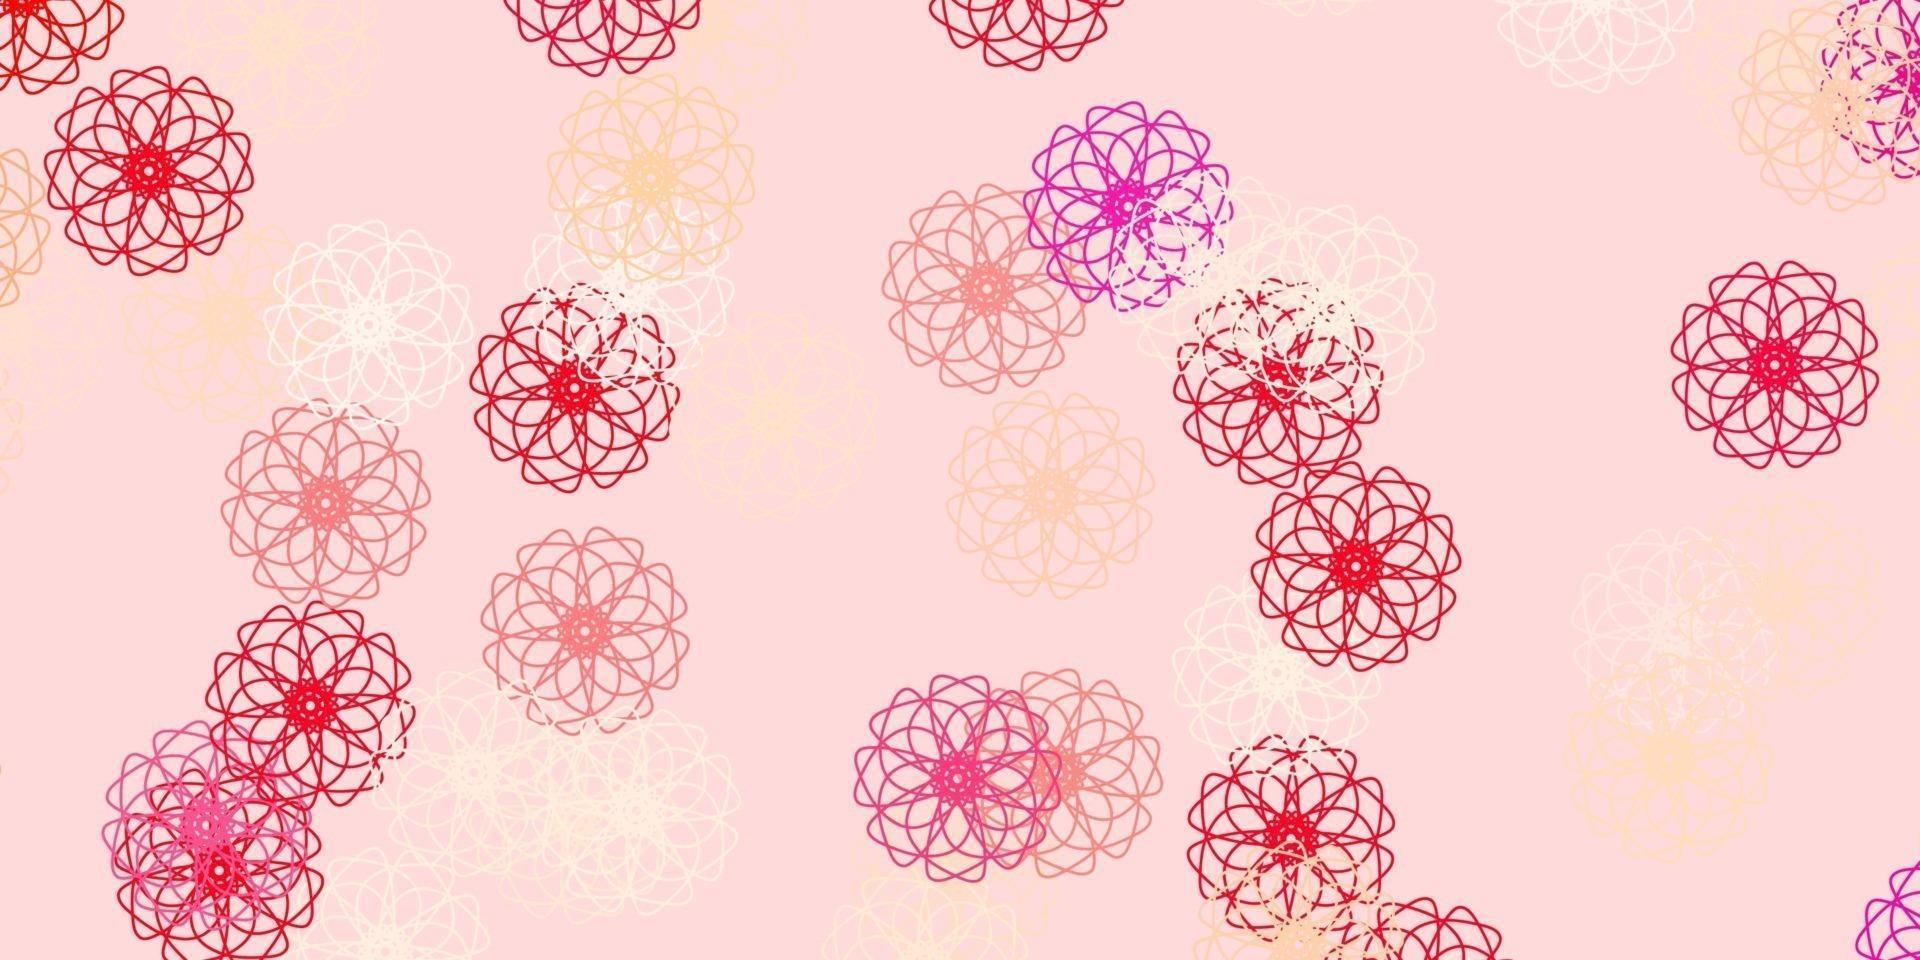 ljusröd vektor doodle textur med blommor.